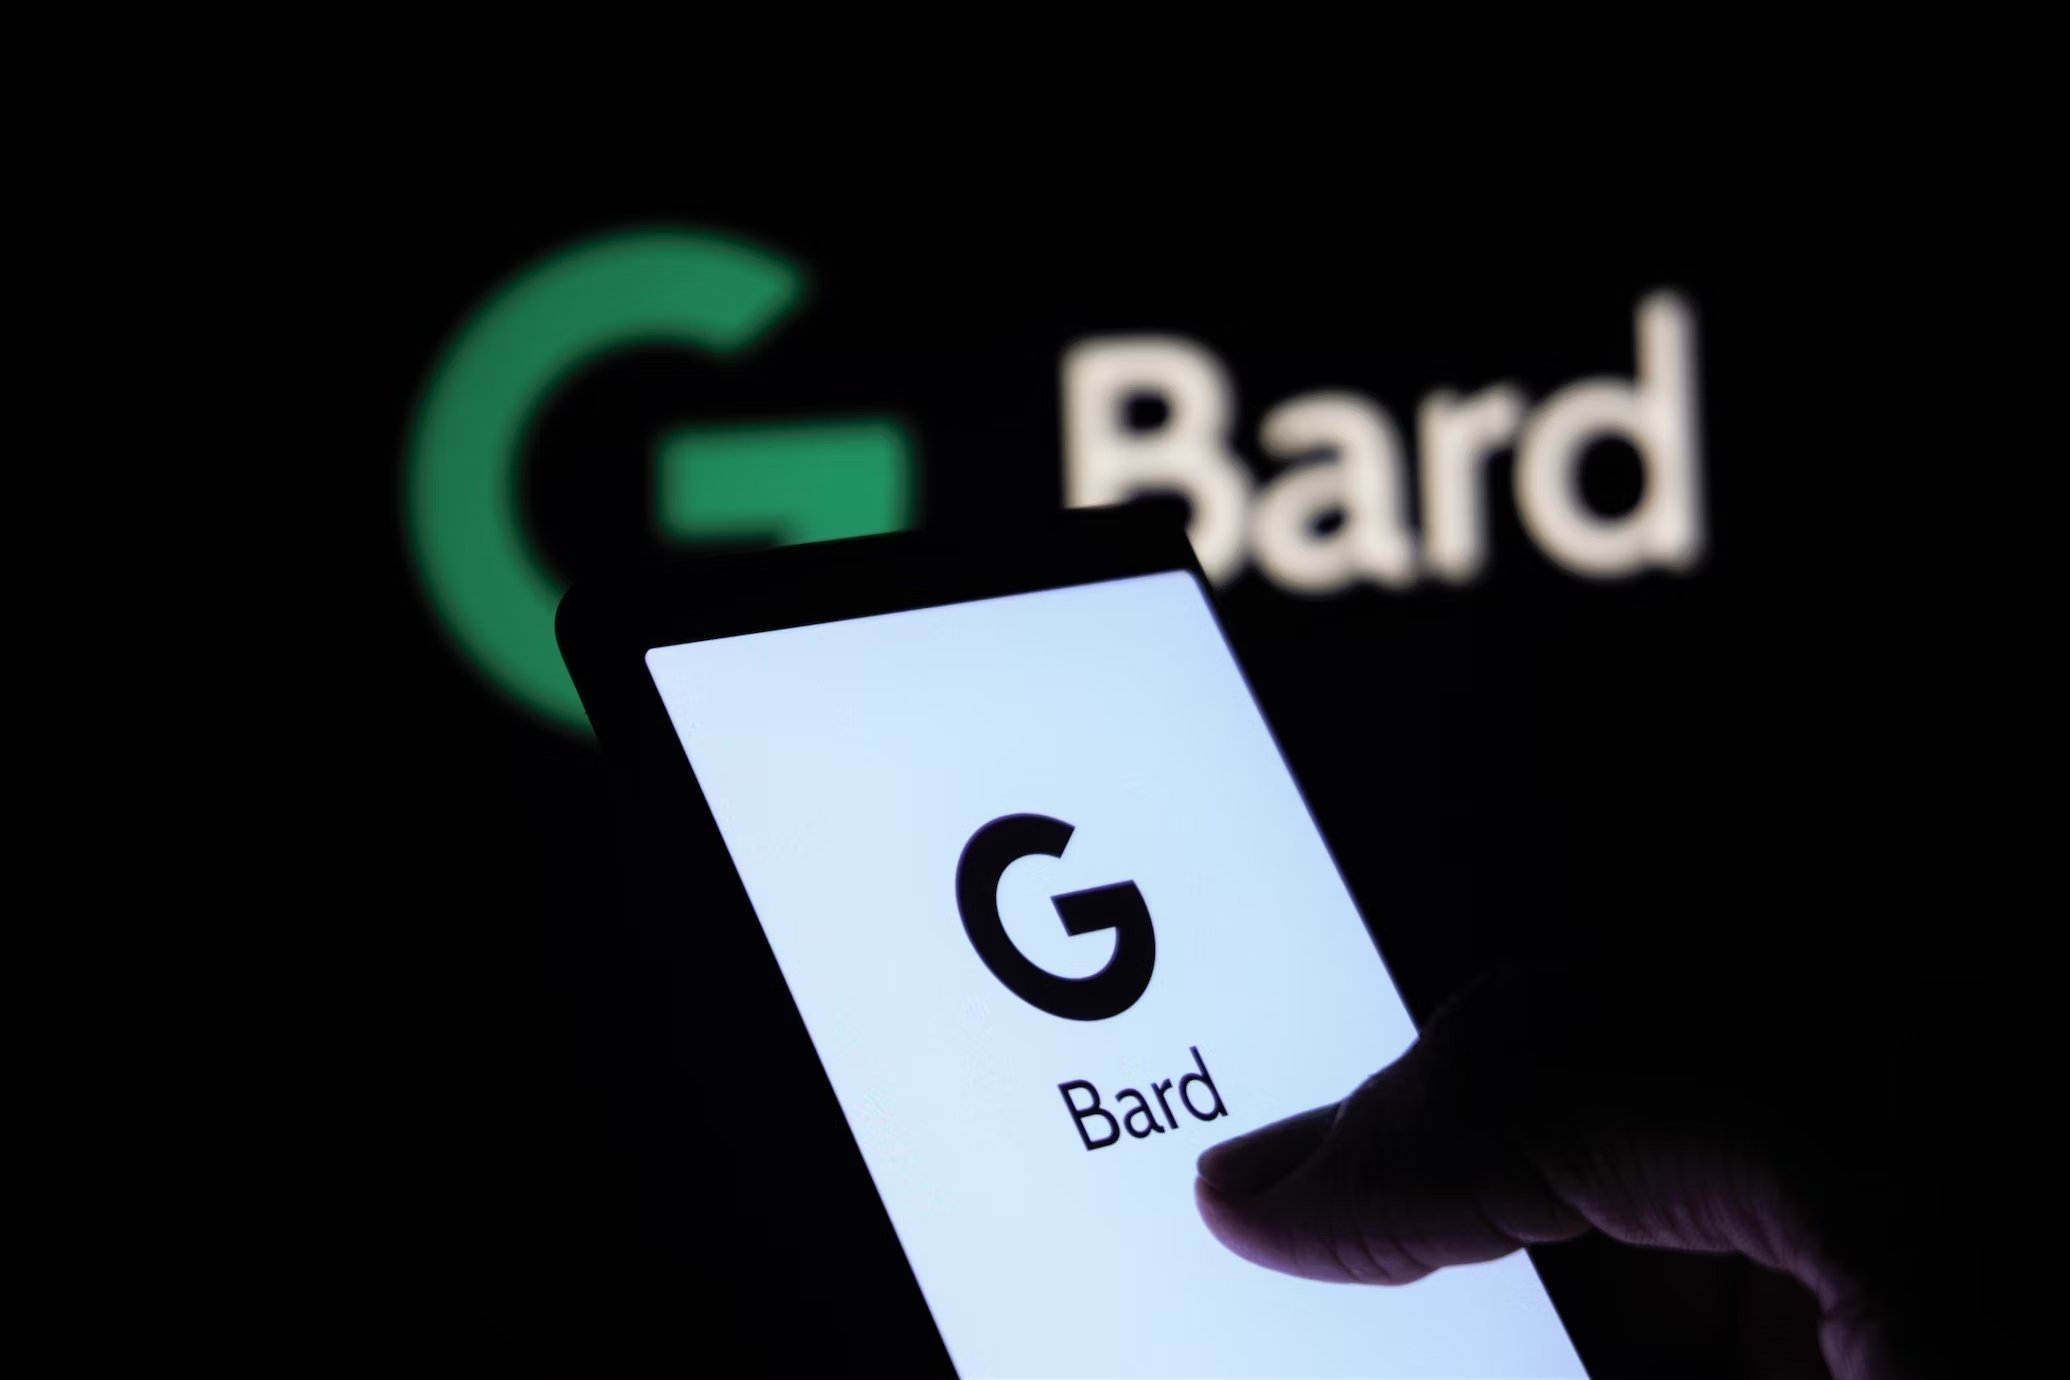 Google Bard agora pode “ver” os vídeos do Youtube